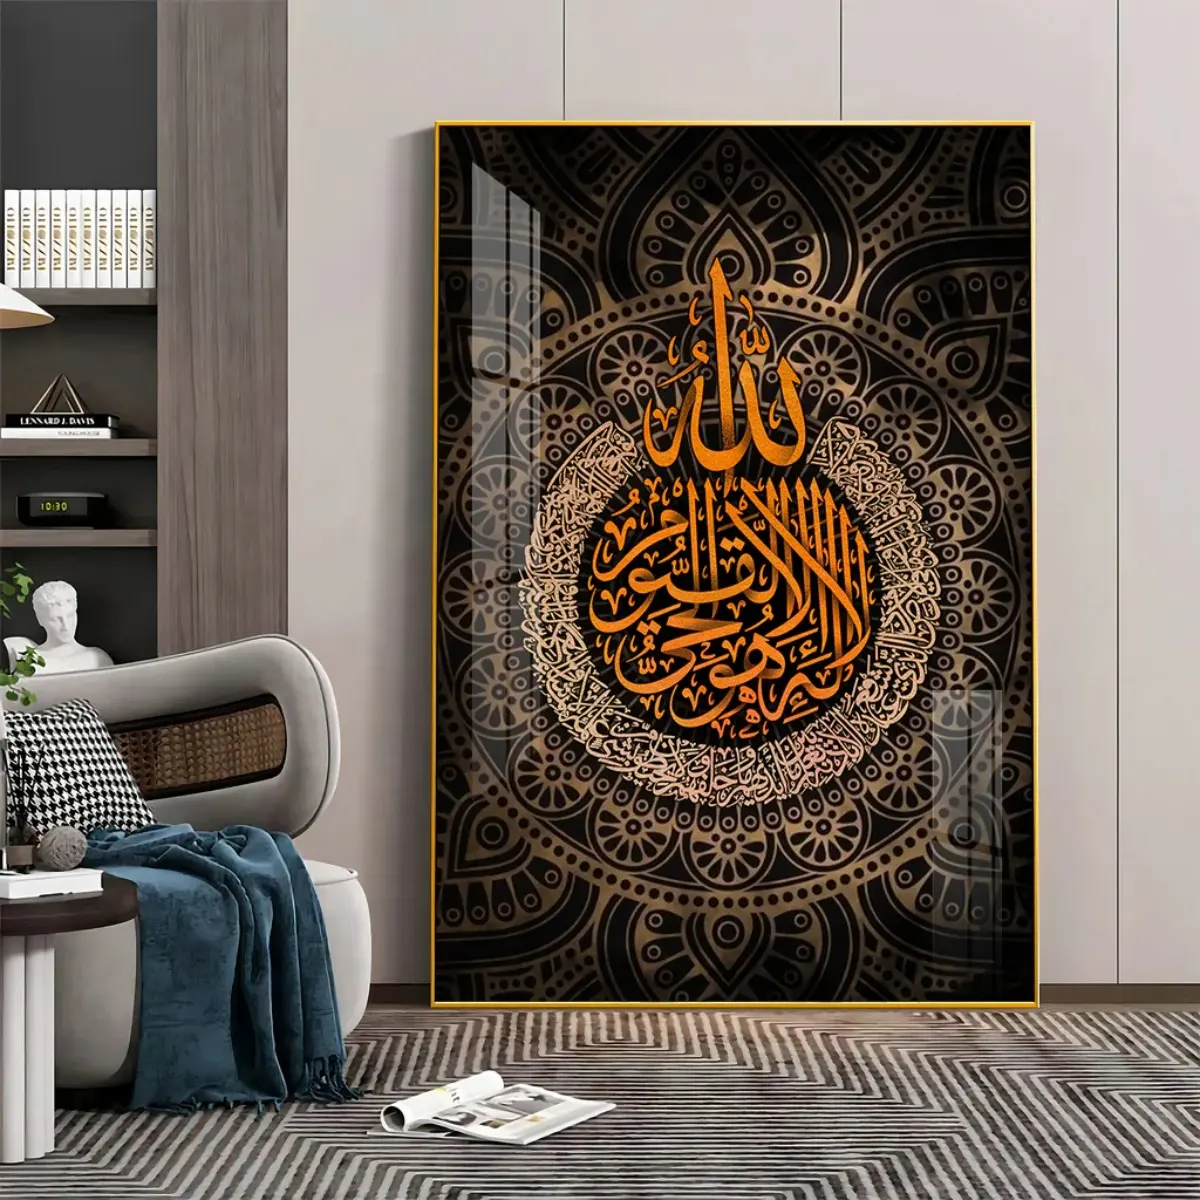 Dekorasi rumah islam seni gantung dinding besar Dekorasi seni kaligrafi Arab islam kristal porselen lukisan seni dinding bingkai